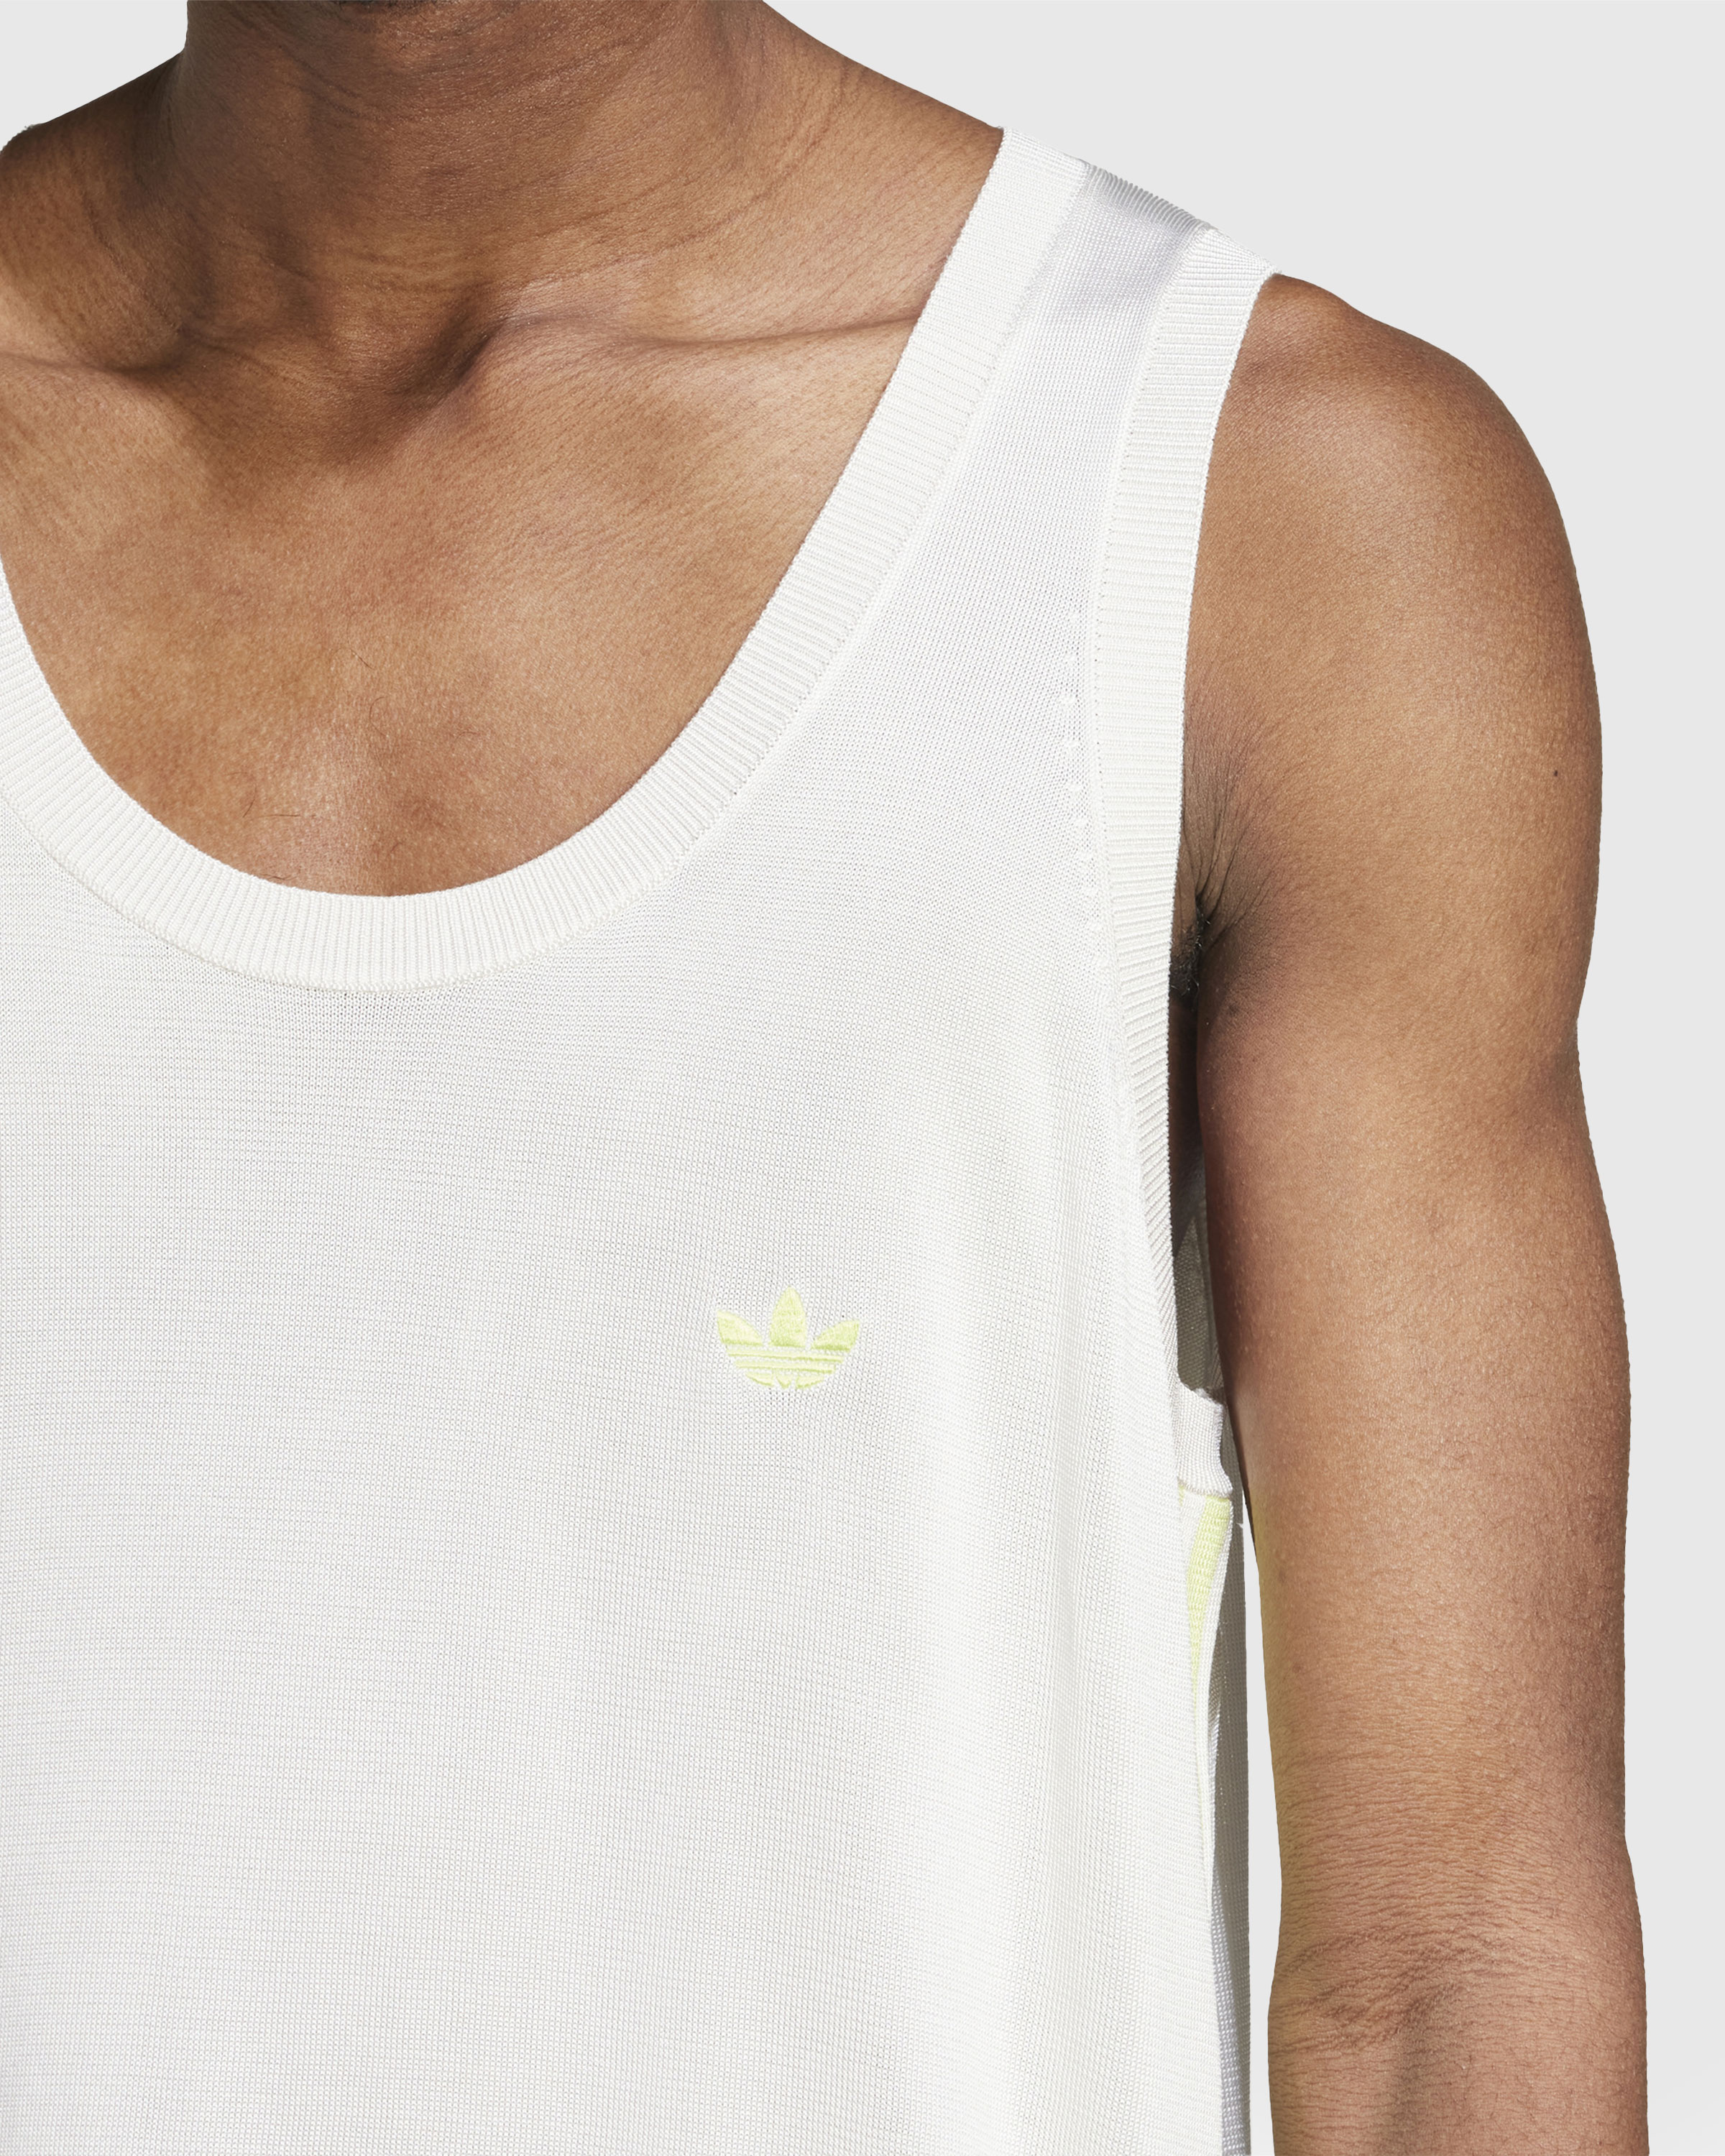 Adidas x Wales Bonner – Knit Vest Chalk White/Semi Frozen Yellow - Tank Tops - White - Image 5